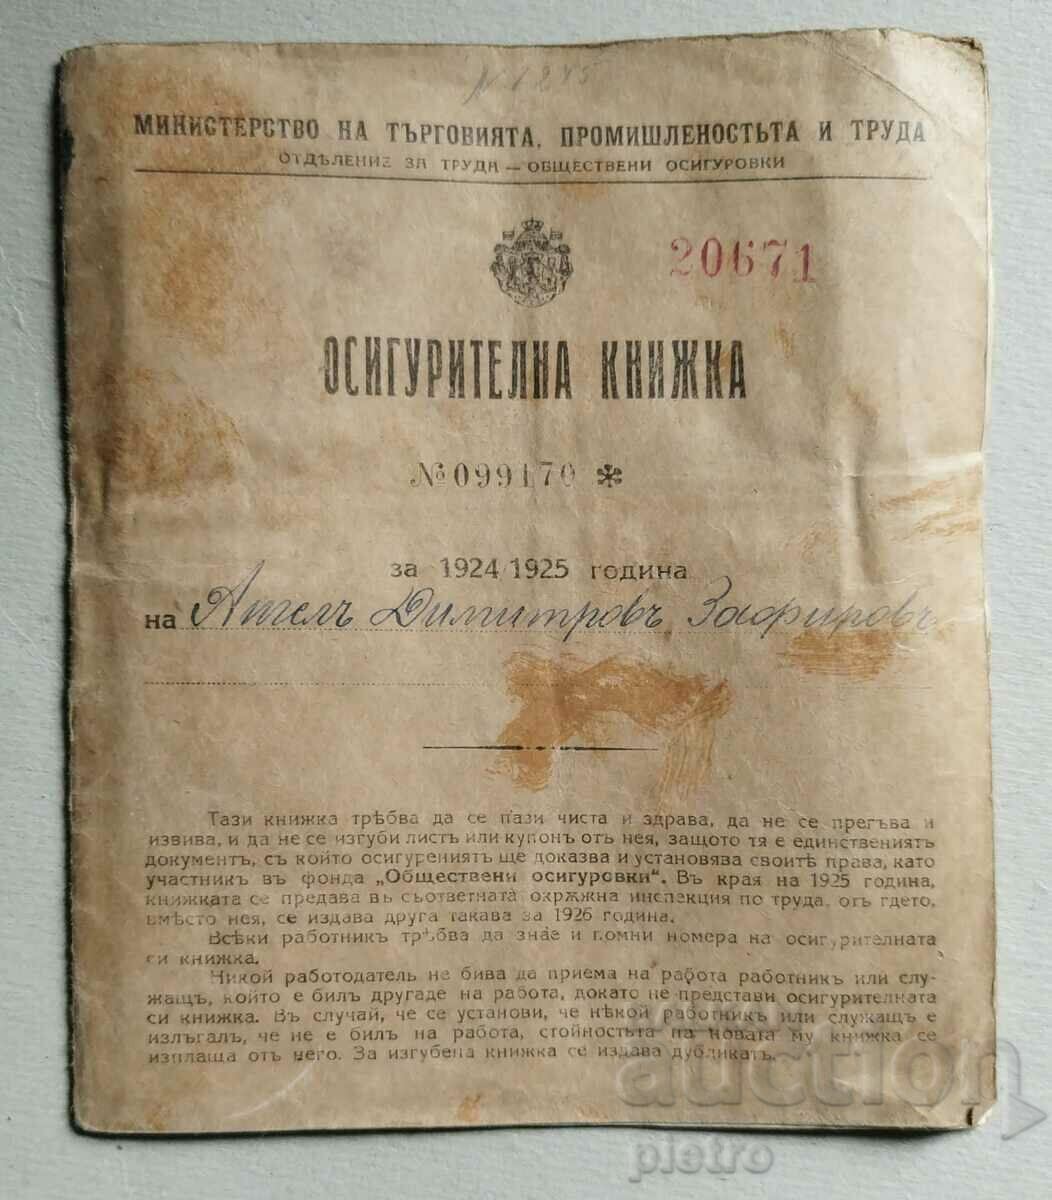 Βασίλειο της Βουλγαρίας Ασφαλιστικό βιβλίο 1924 - 1925